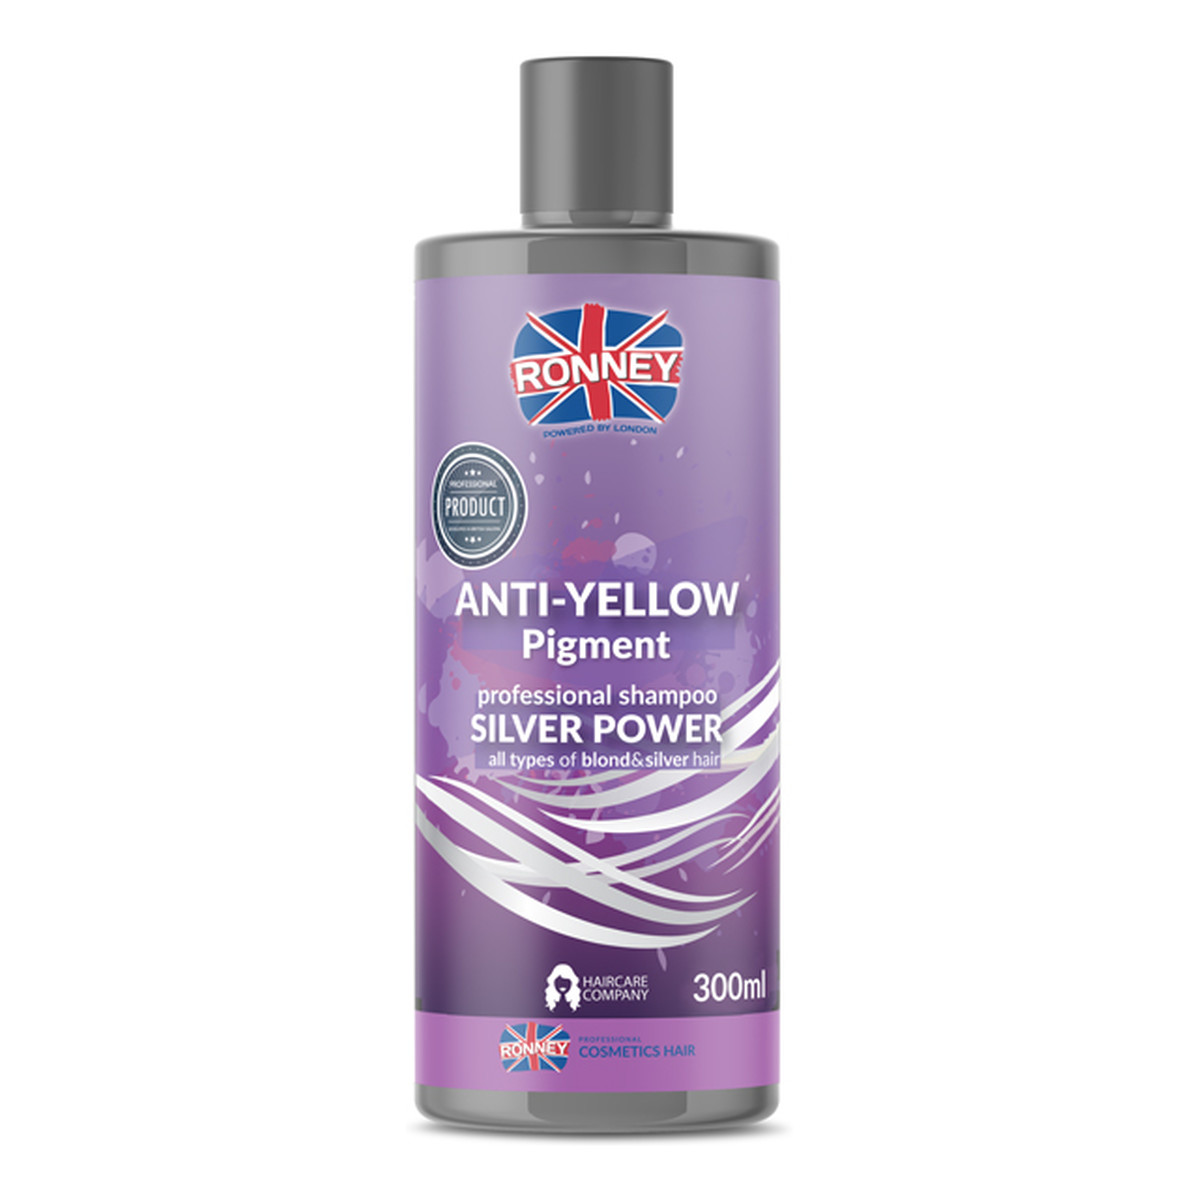 Ronney Anti-yellow silver power professional shampoo szampon do włosów blond rozjaśnianych i siwych 300ml